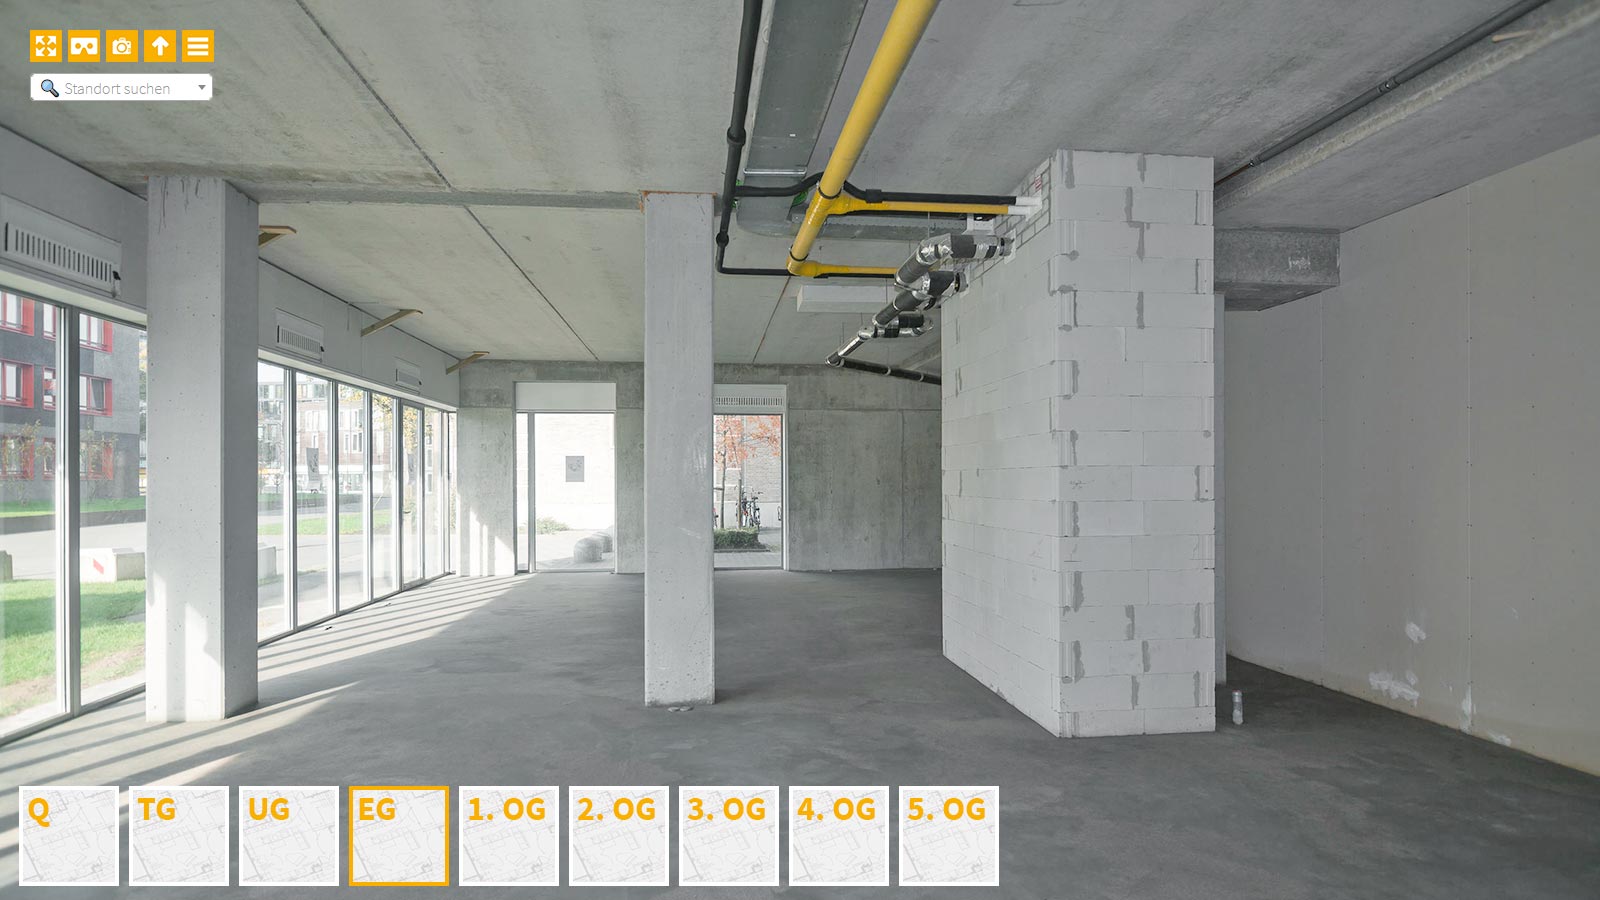 Baudokumentation 360 Grad bei gestörten Projekten in 


	


	


	


	


	


	


	


	


	


	Mainz









, Bilddokumentation als virtueller Rundgang